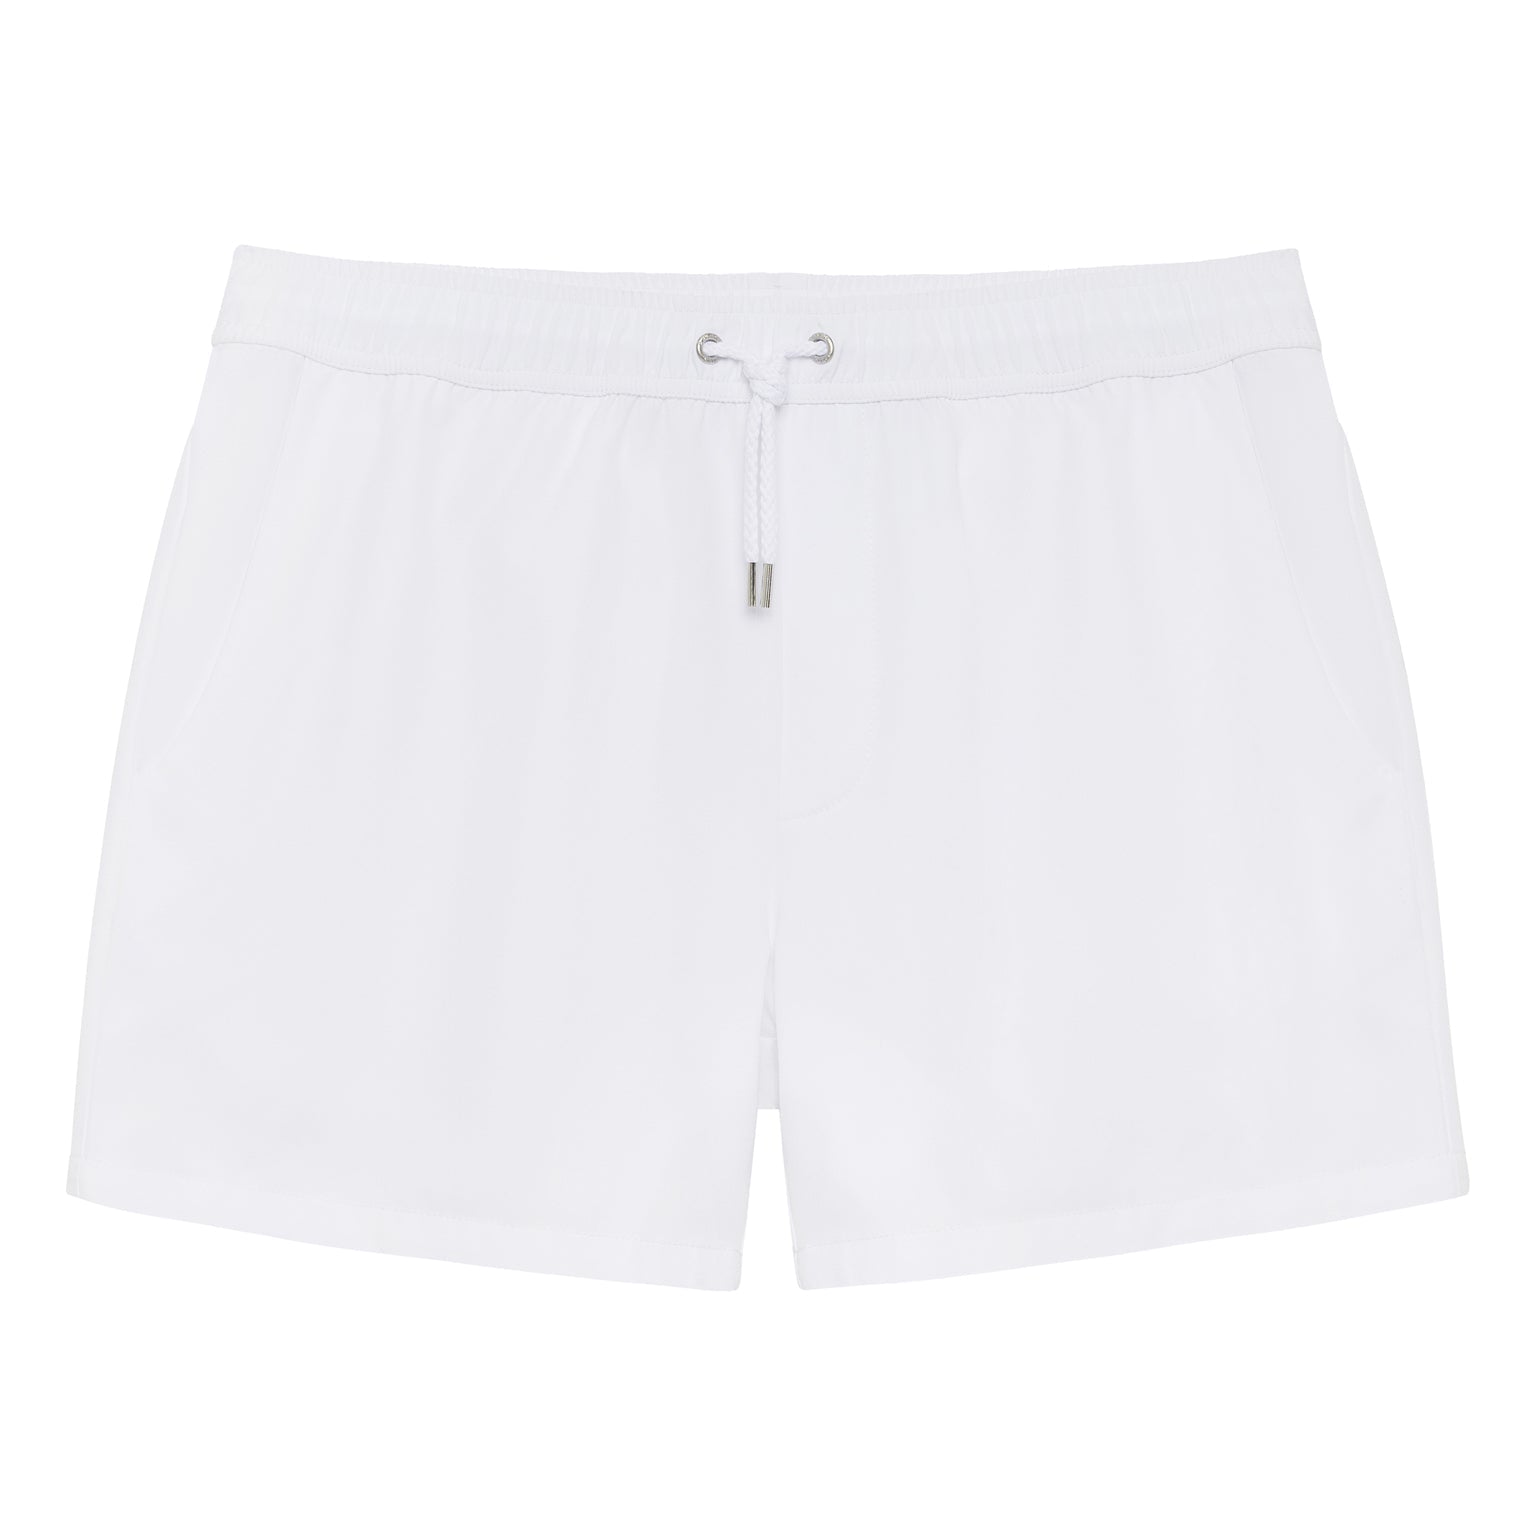 Parke & Ronen Actionwear Polar White Knockout Boxer Short - Underwear ...